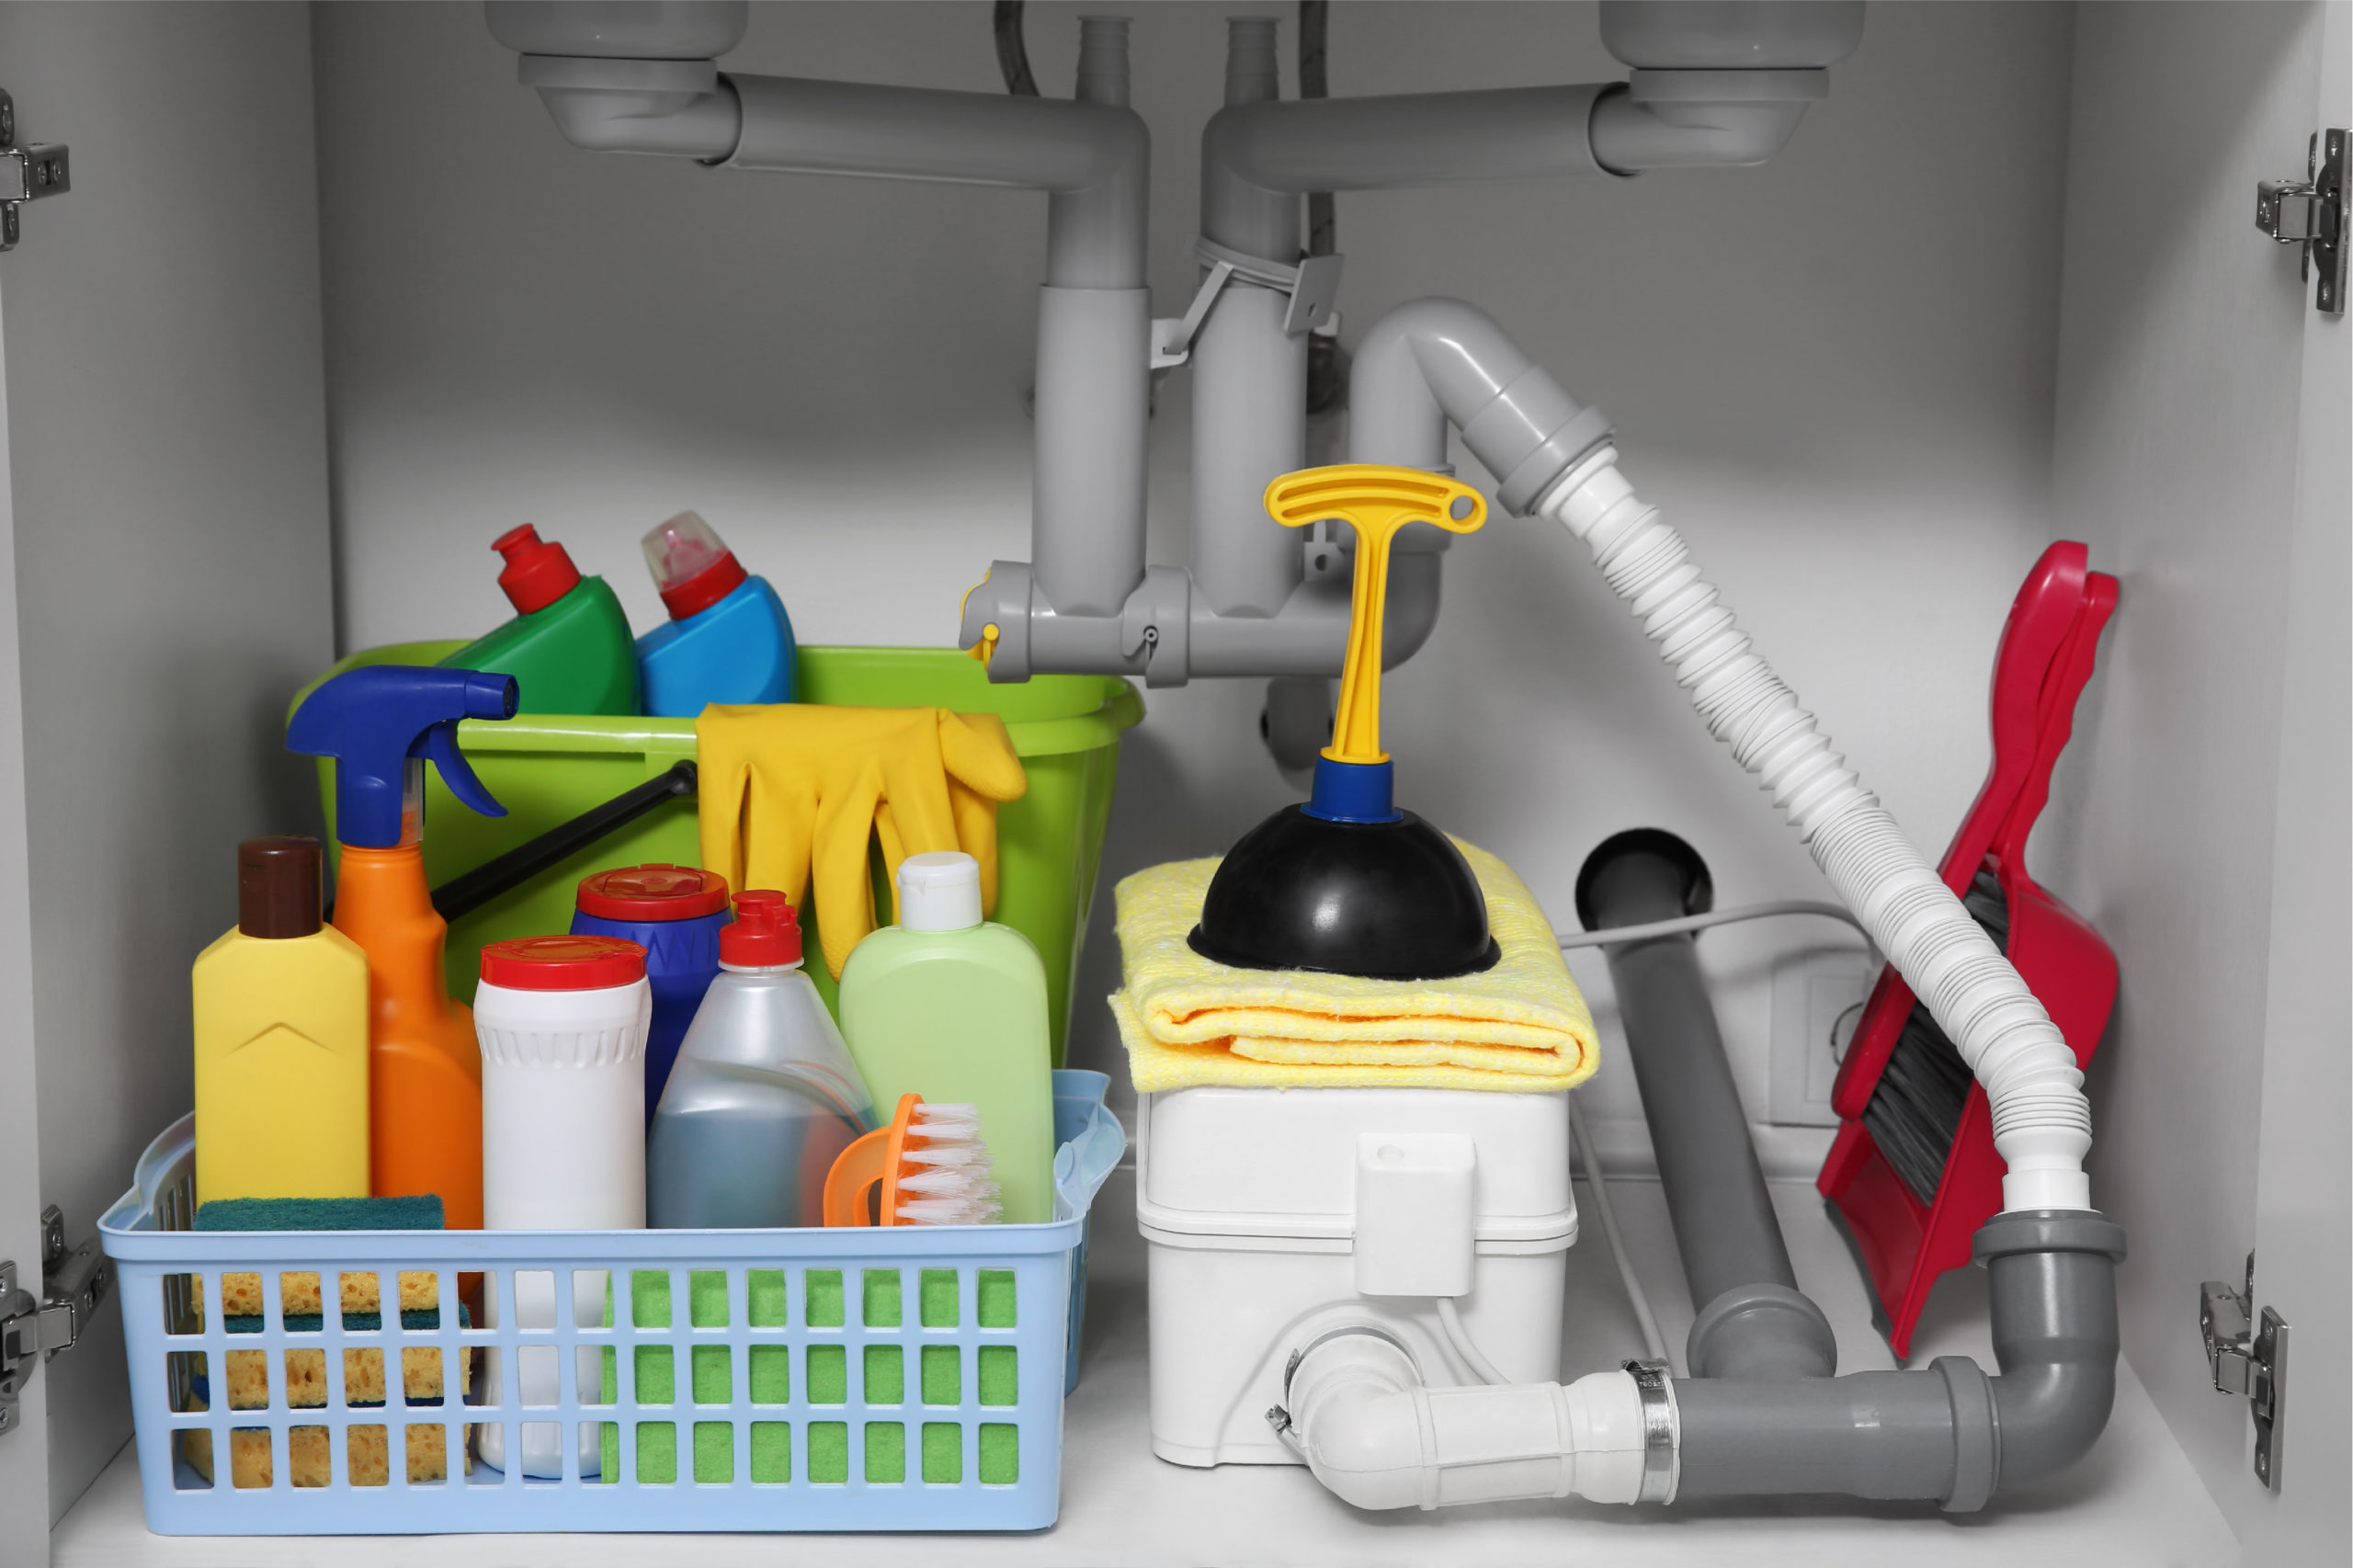 kitchen cleaner organized